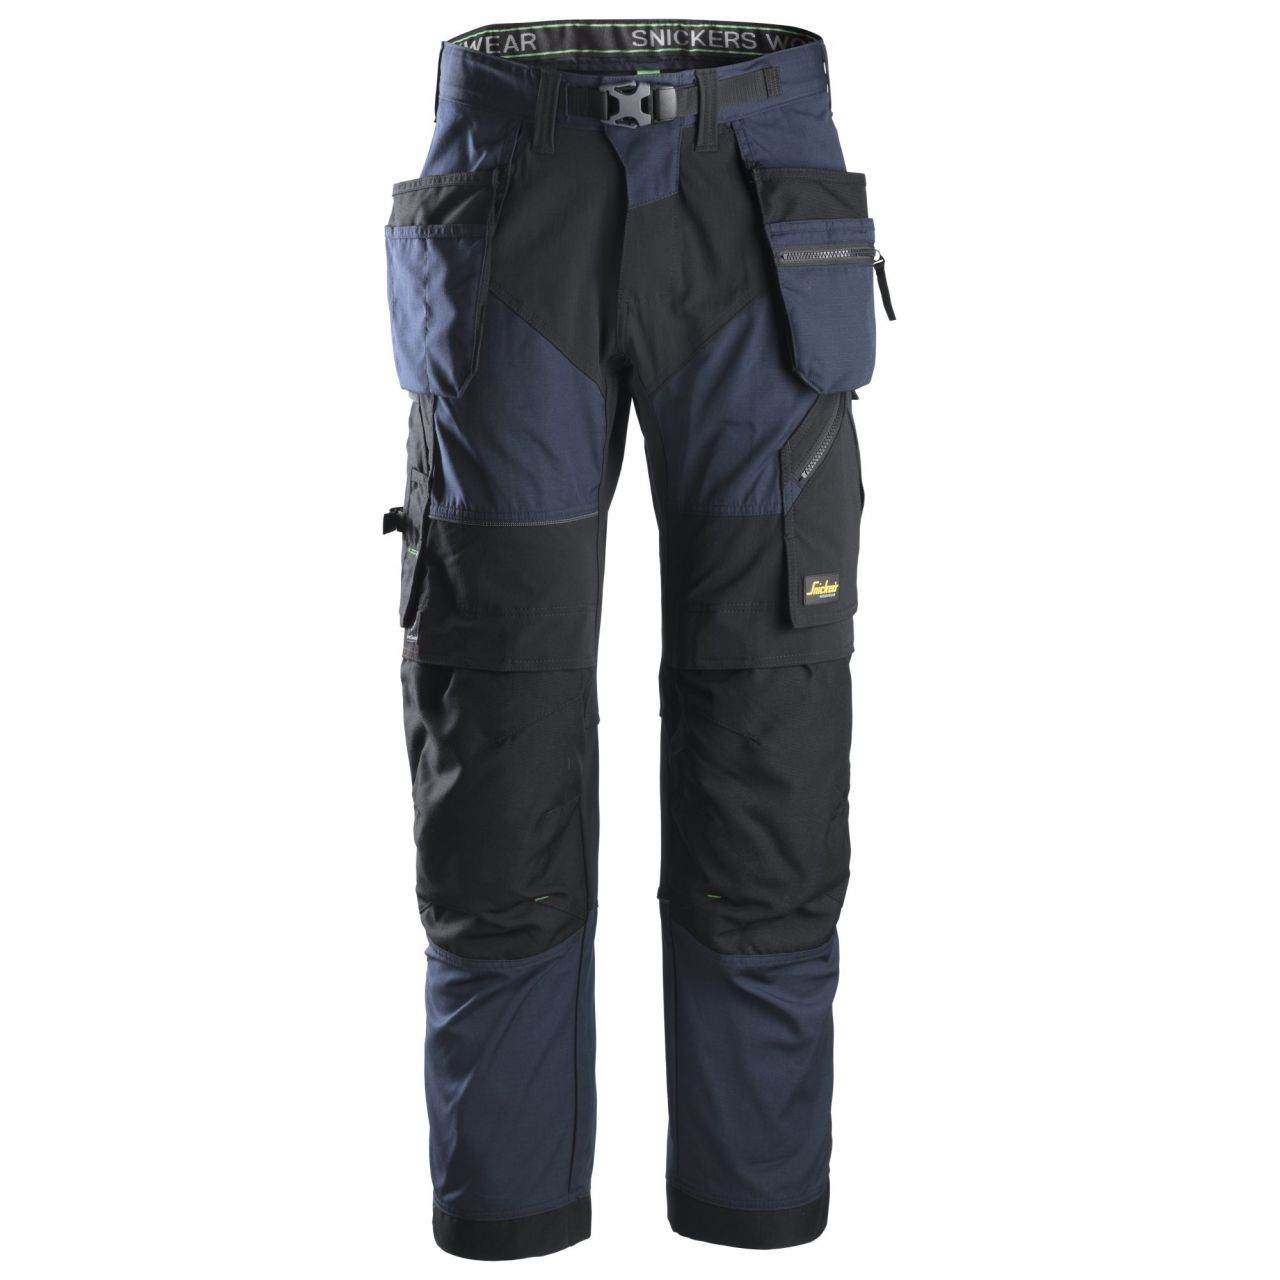 6902 Pantalón largo FlexiWork+ con bolsillos flotantes azul marino-negro talla 48